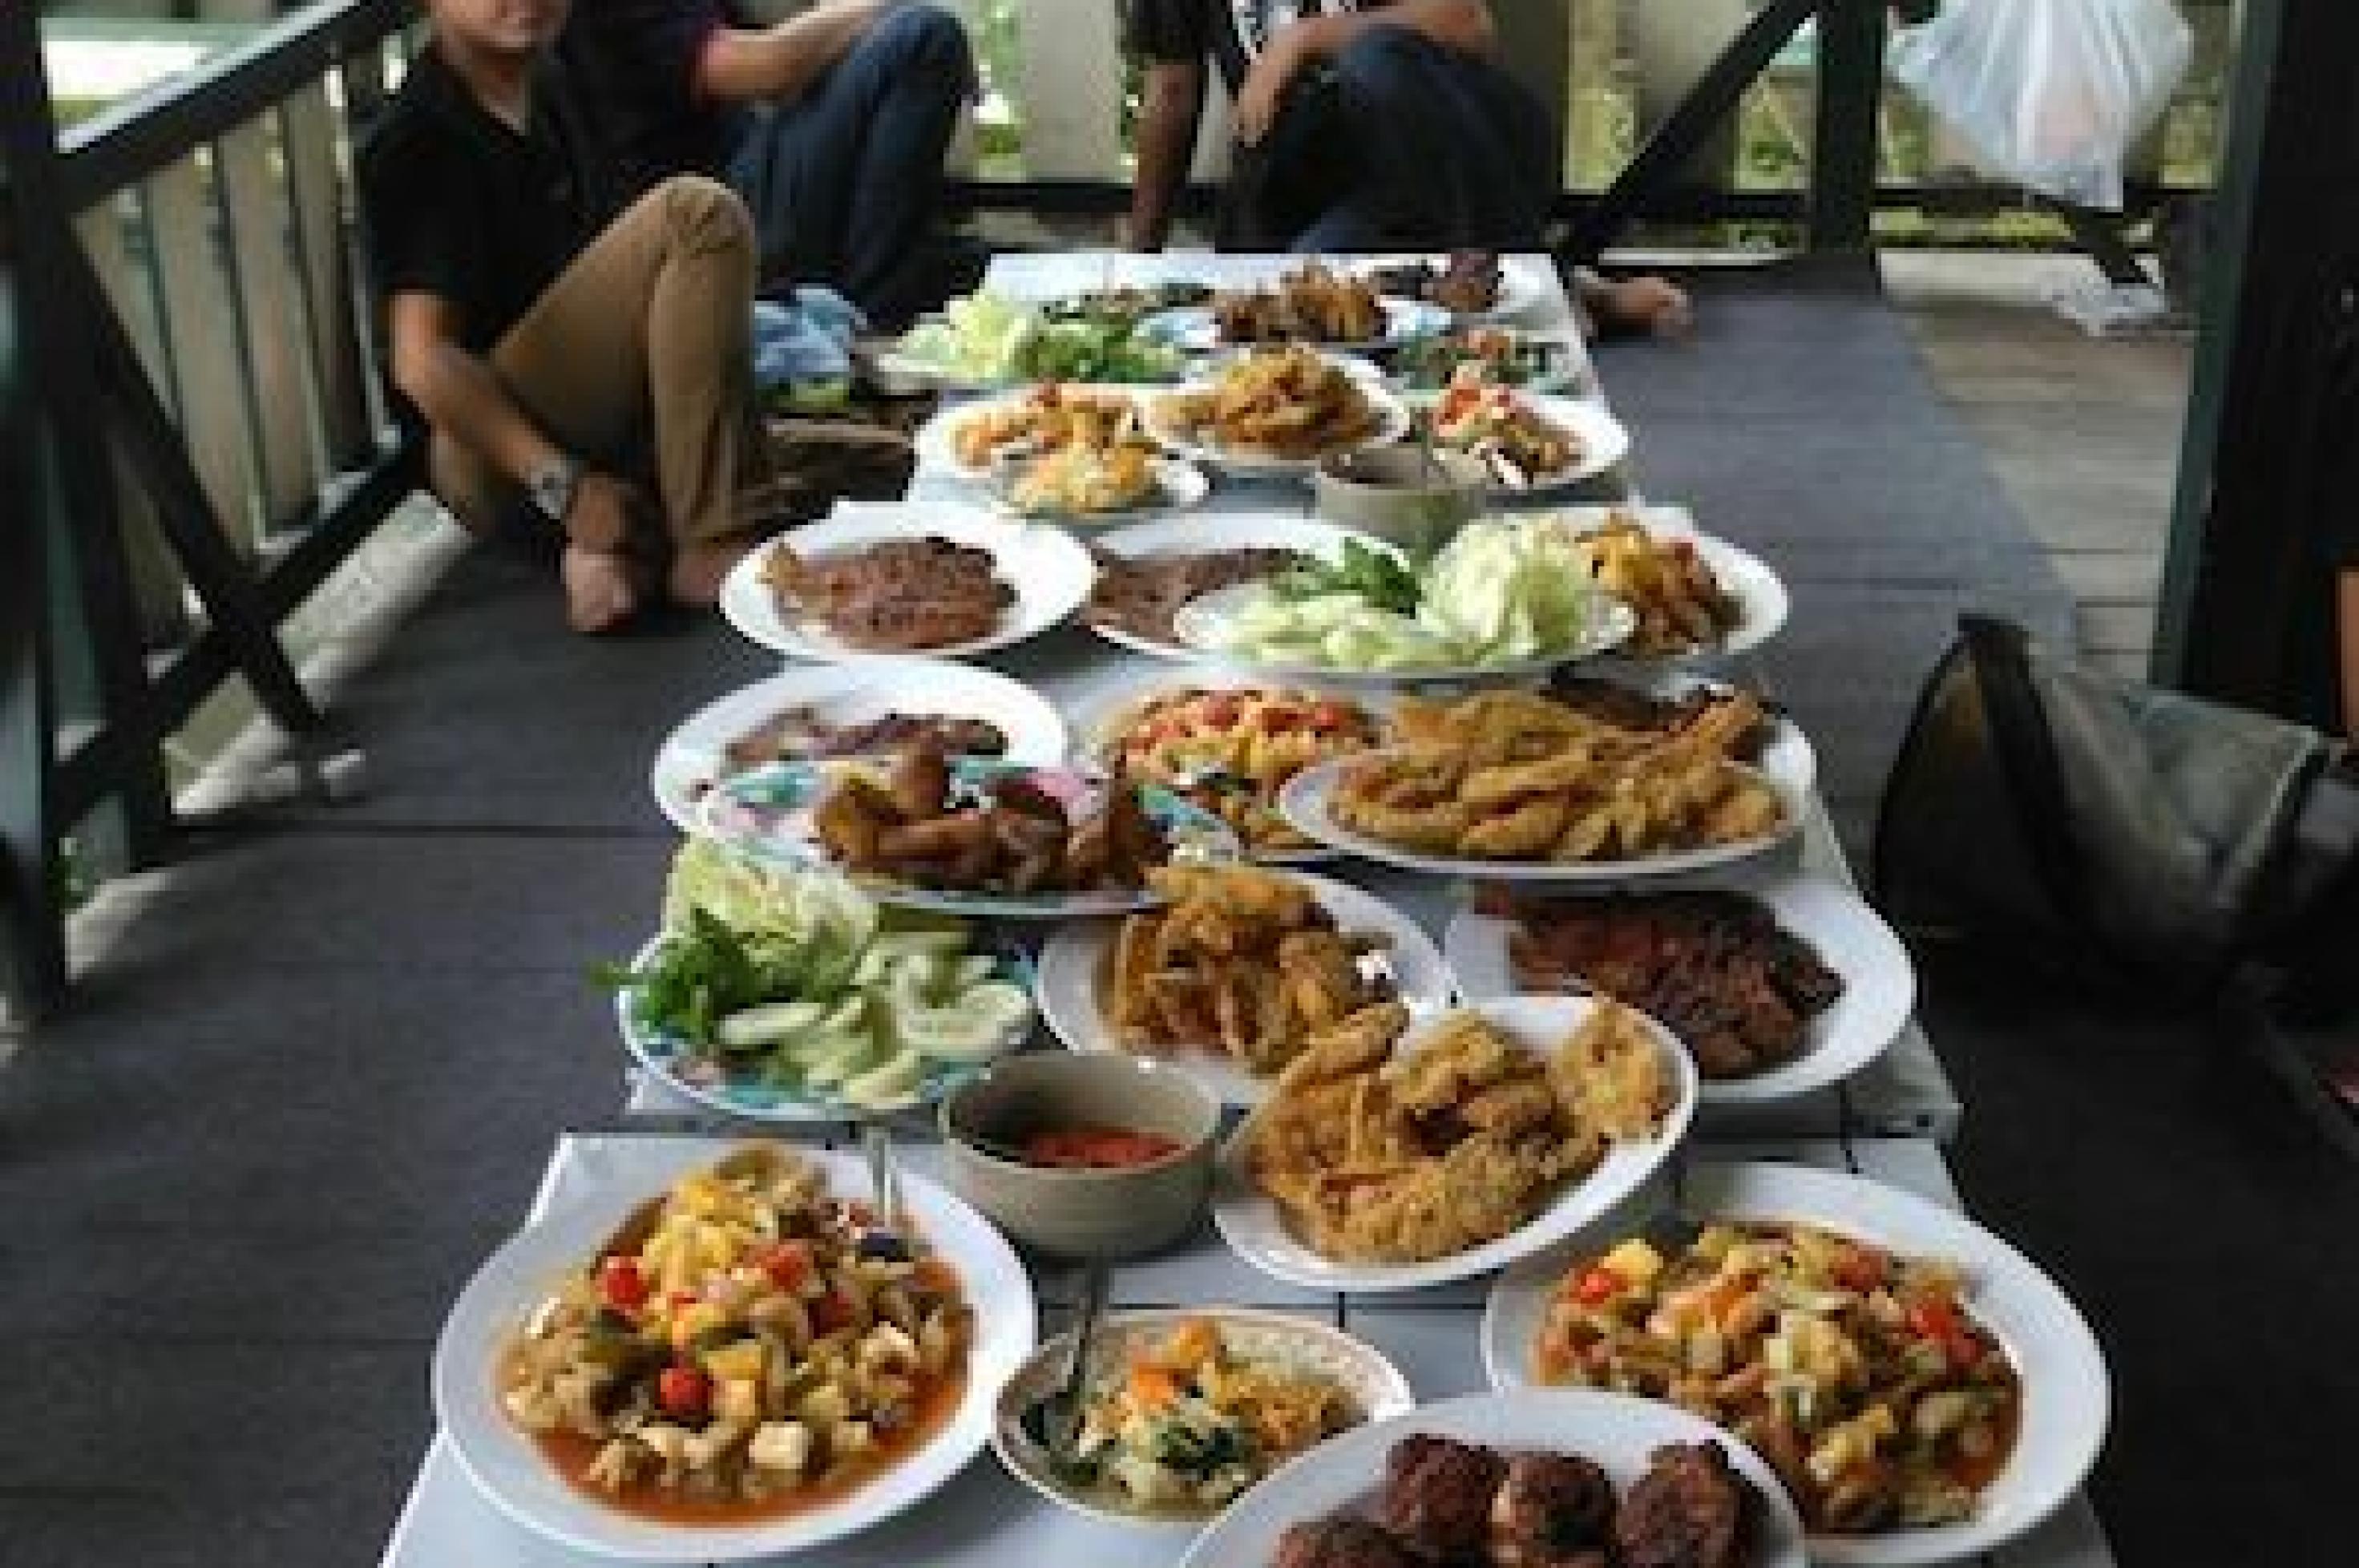 Viele Indonesier brechen das Fasten im Ramadan bei gemeinsamen Festessen. Ein langer Tisch, auf dem sich Teller gefüllt mit bunten Speisen von Gemüse über gebackenes und frittiertes Fleisch zu Käse türmen.